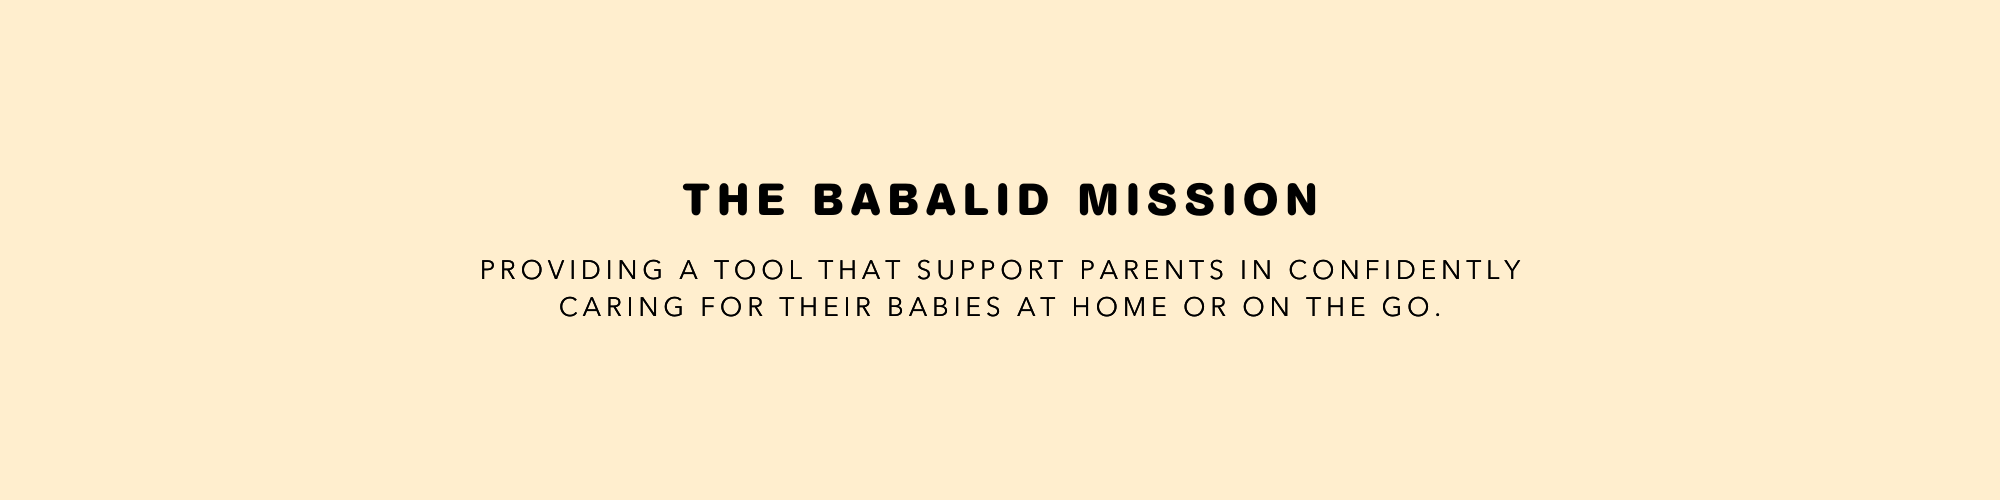 BabaLID bottle, BabaLIDs, Babies with BabaLID, Baby with bottle, Baby Friends, BabaLID Mission Statement